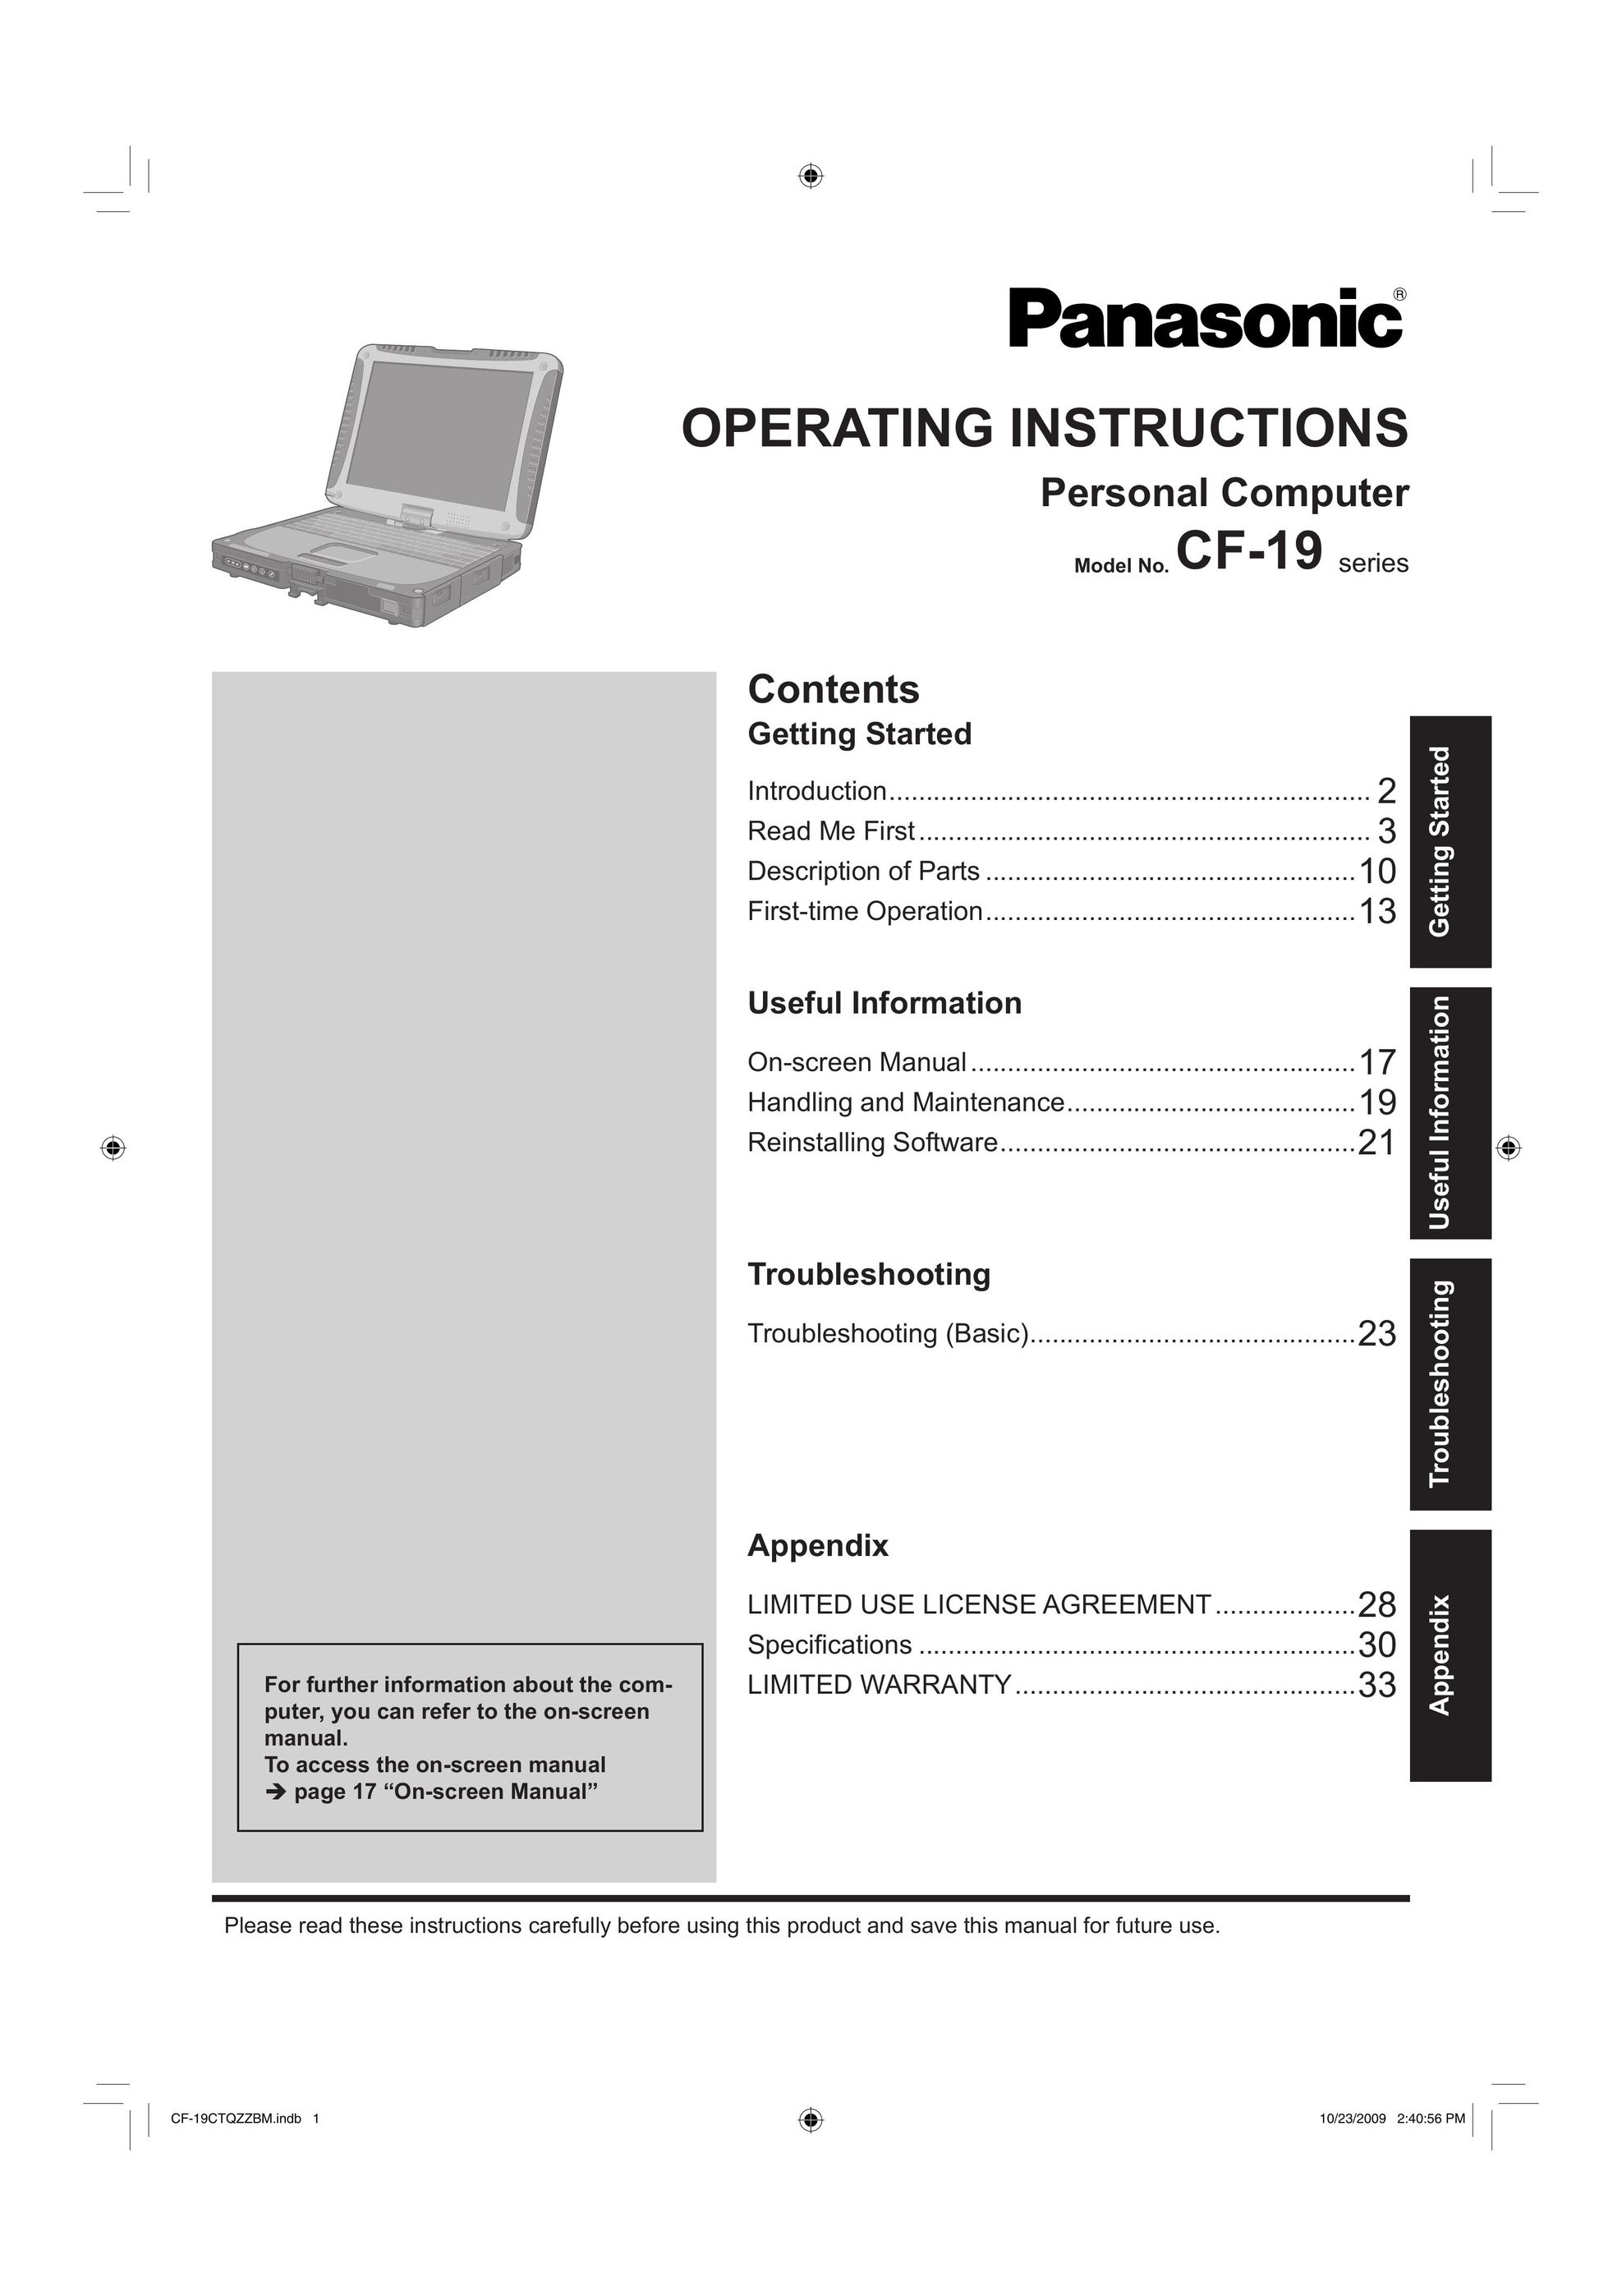 Panasonic CF-19 Personal Computer User Manual